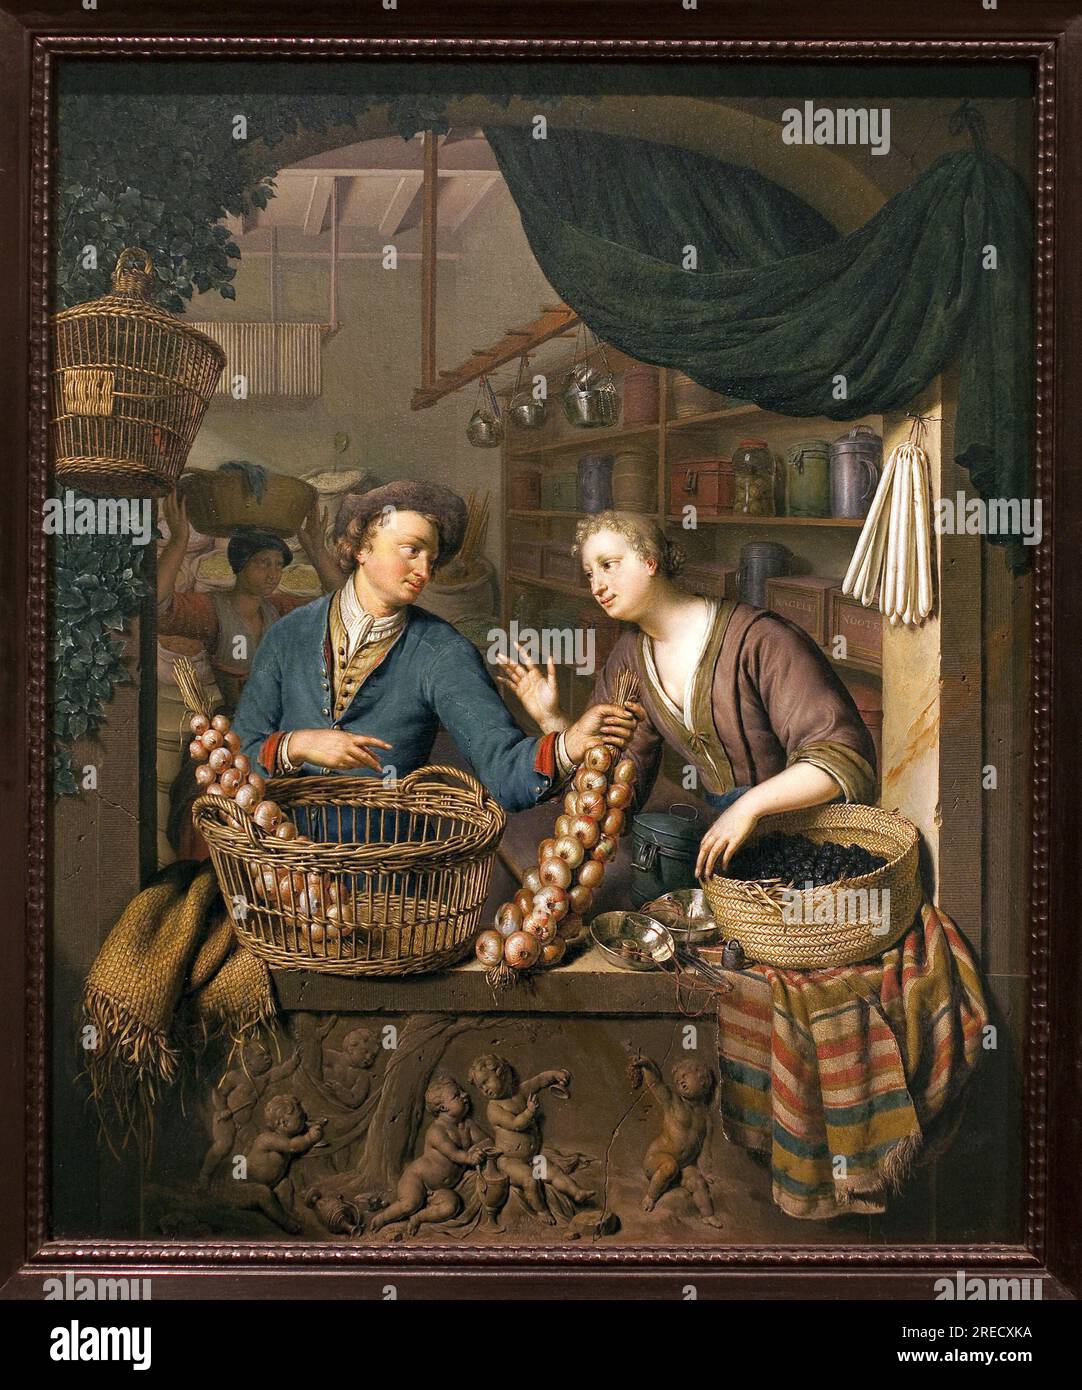 Vendeur d'oignons. Peinture de Willem van Mieris (1662-1747), huile sur bois, 1730. Art hollandais, 18e siecle. Musée des Beaux Arts de Niort. Banque D'Images